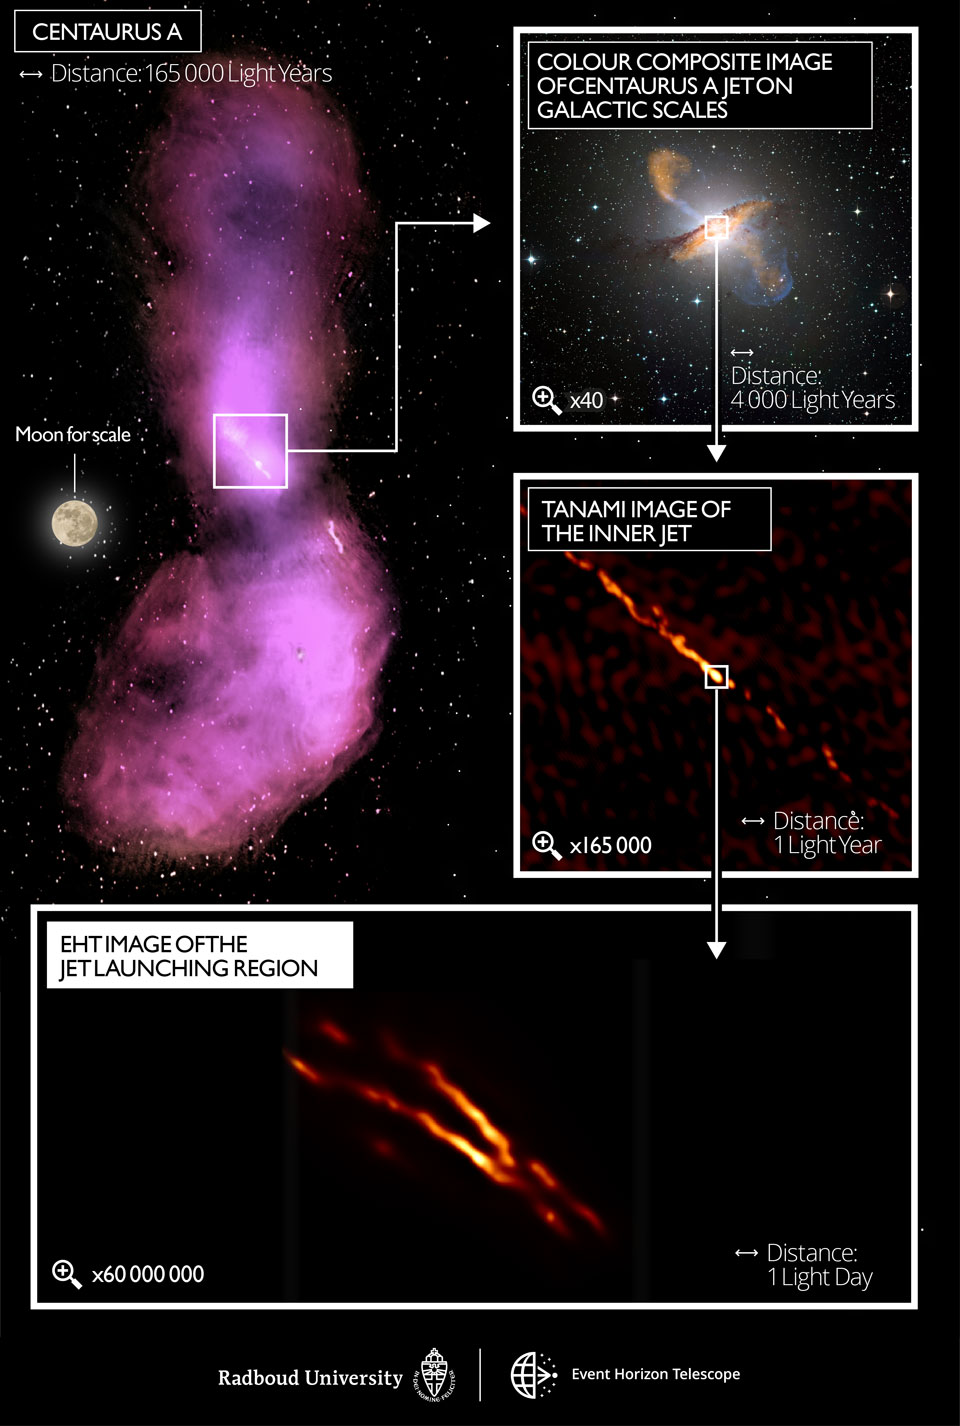 图为活动星系半人马座A中心喷流的放大图。有关更多详细信息，请参阅说明。